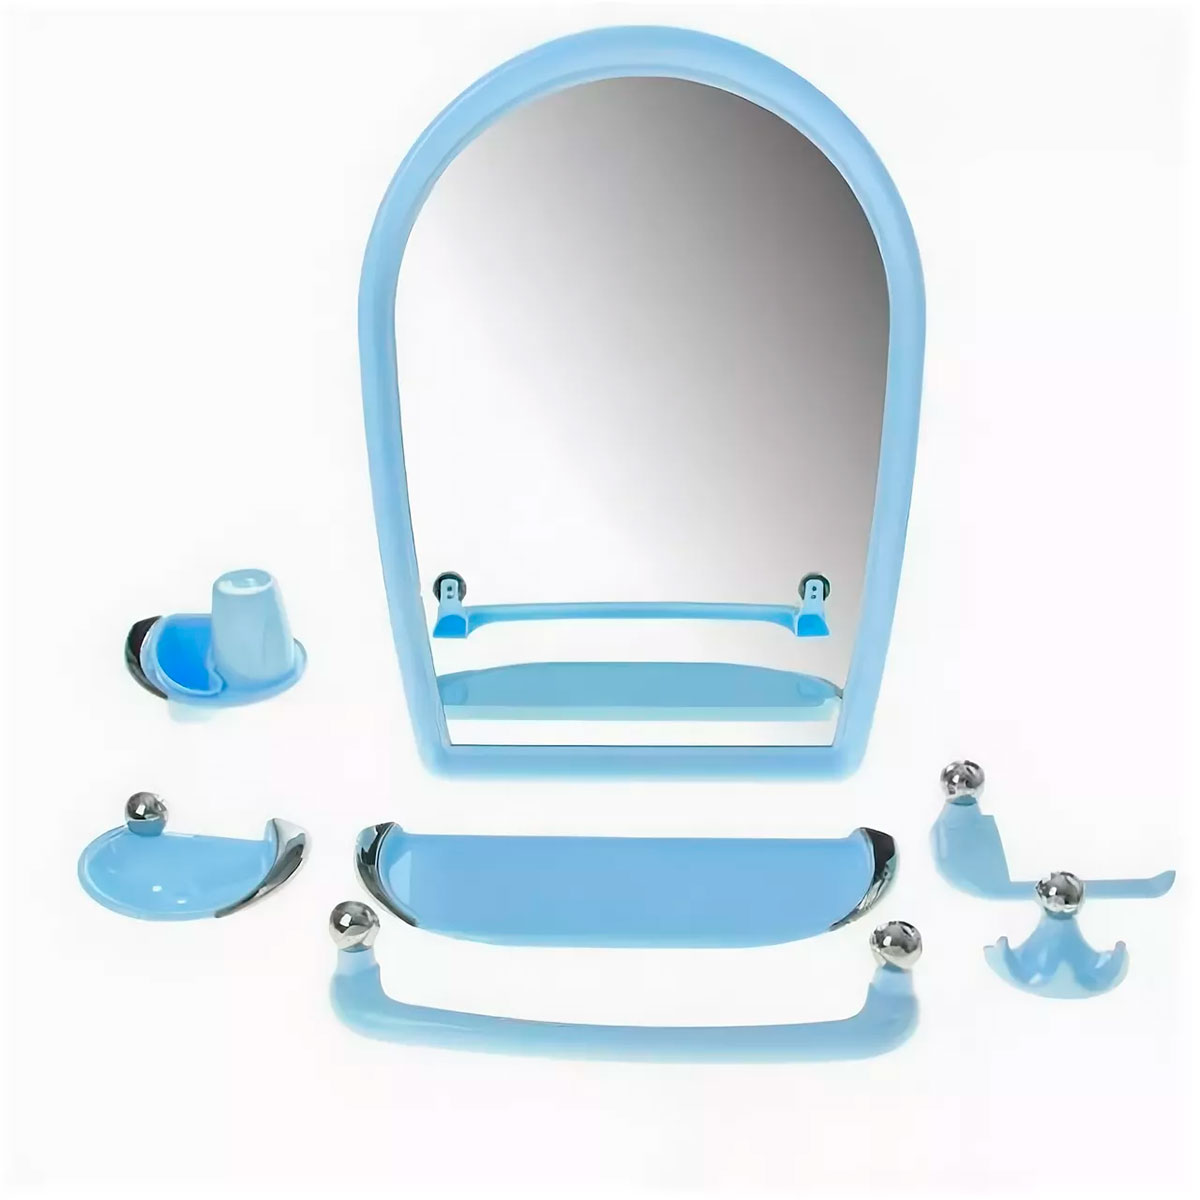 Набор для ванной с зеркалом. Набор для ванной Беросси 46 светло-бежевый. Беросси набор для ванной Вива Классик. Набор для ванной с зеркалом Элегант 06-02. Набор для ванной Berossi Вива Классик 10208 голубой.